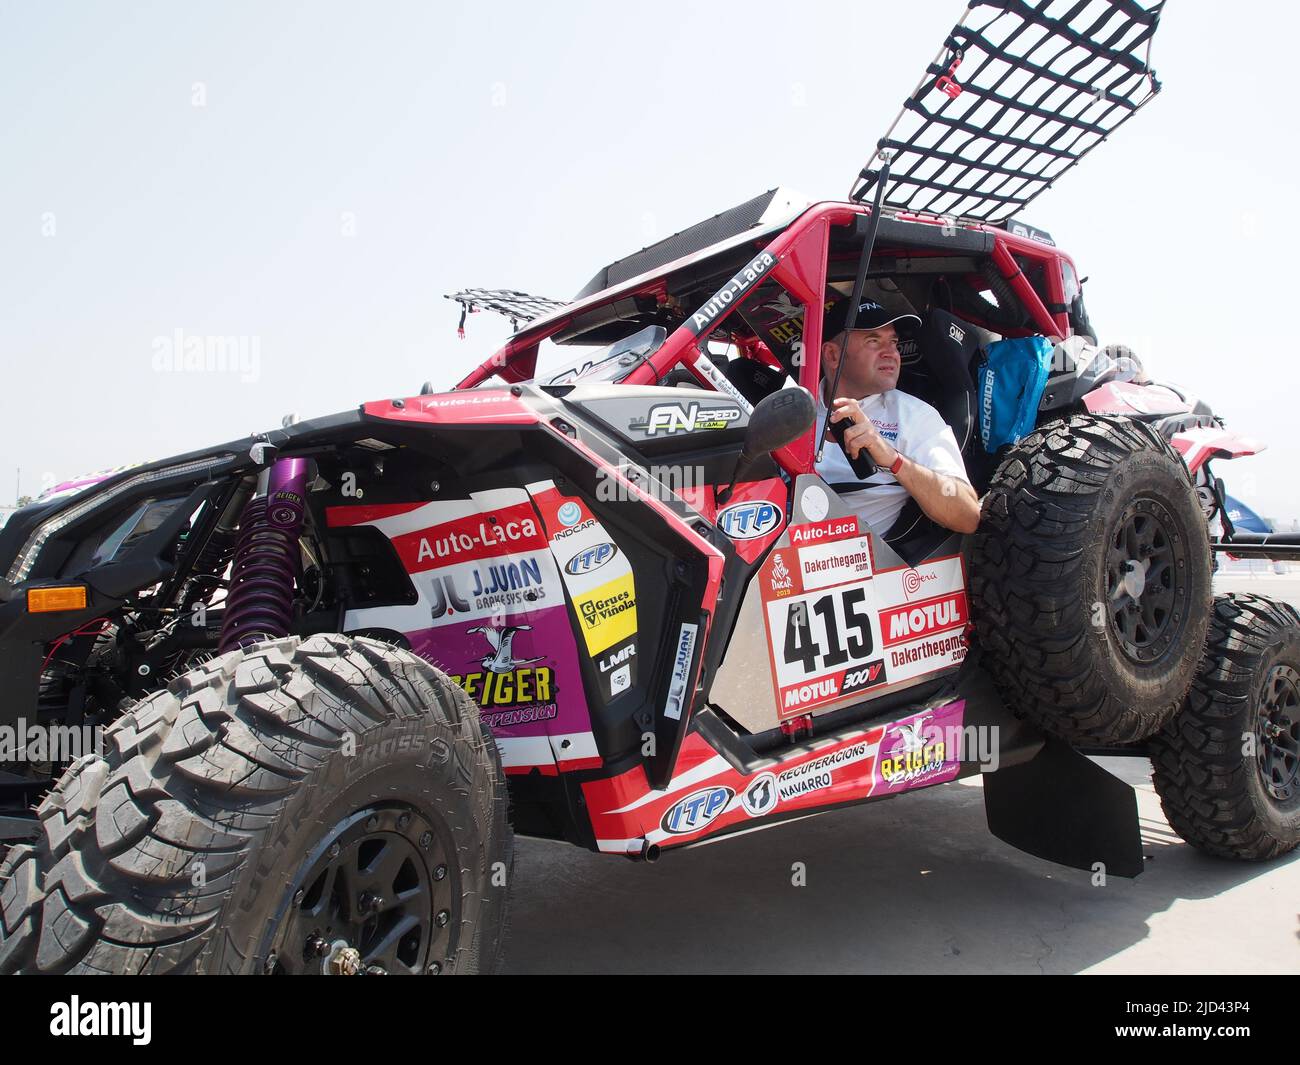 CAN am 415, Dani sola e Pedro Lopez dalla Spagna, FN Speed team, superando il controllo tecnico. Il rally Dakar corre quest'anno il 100% in Perù. Foto Stock